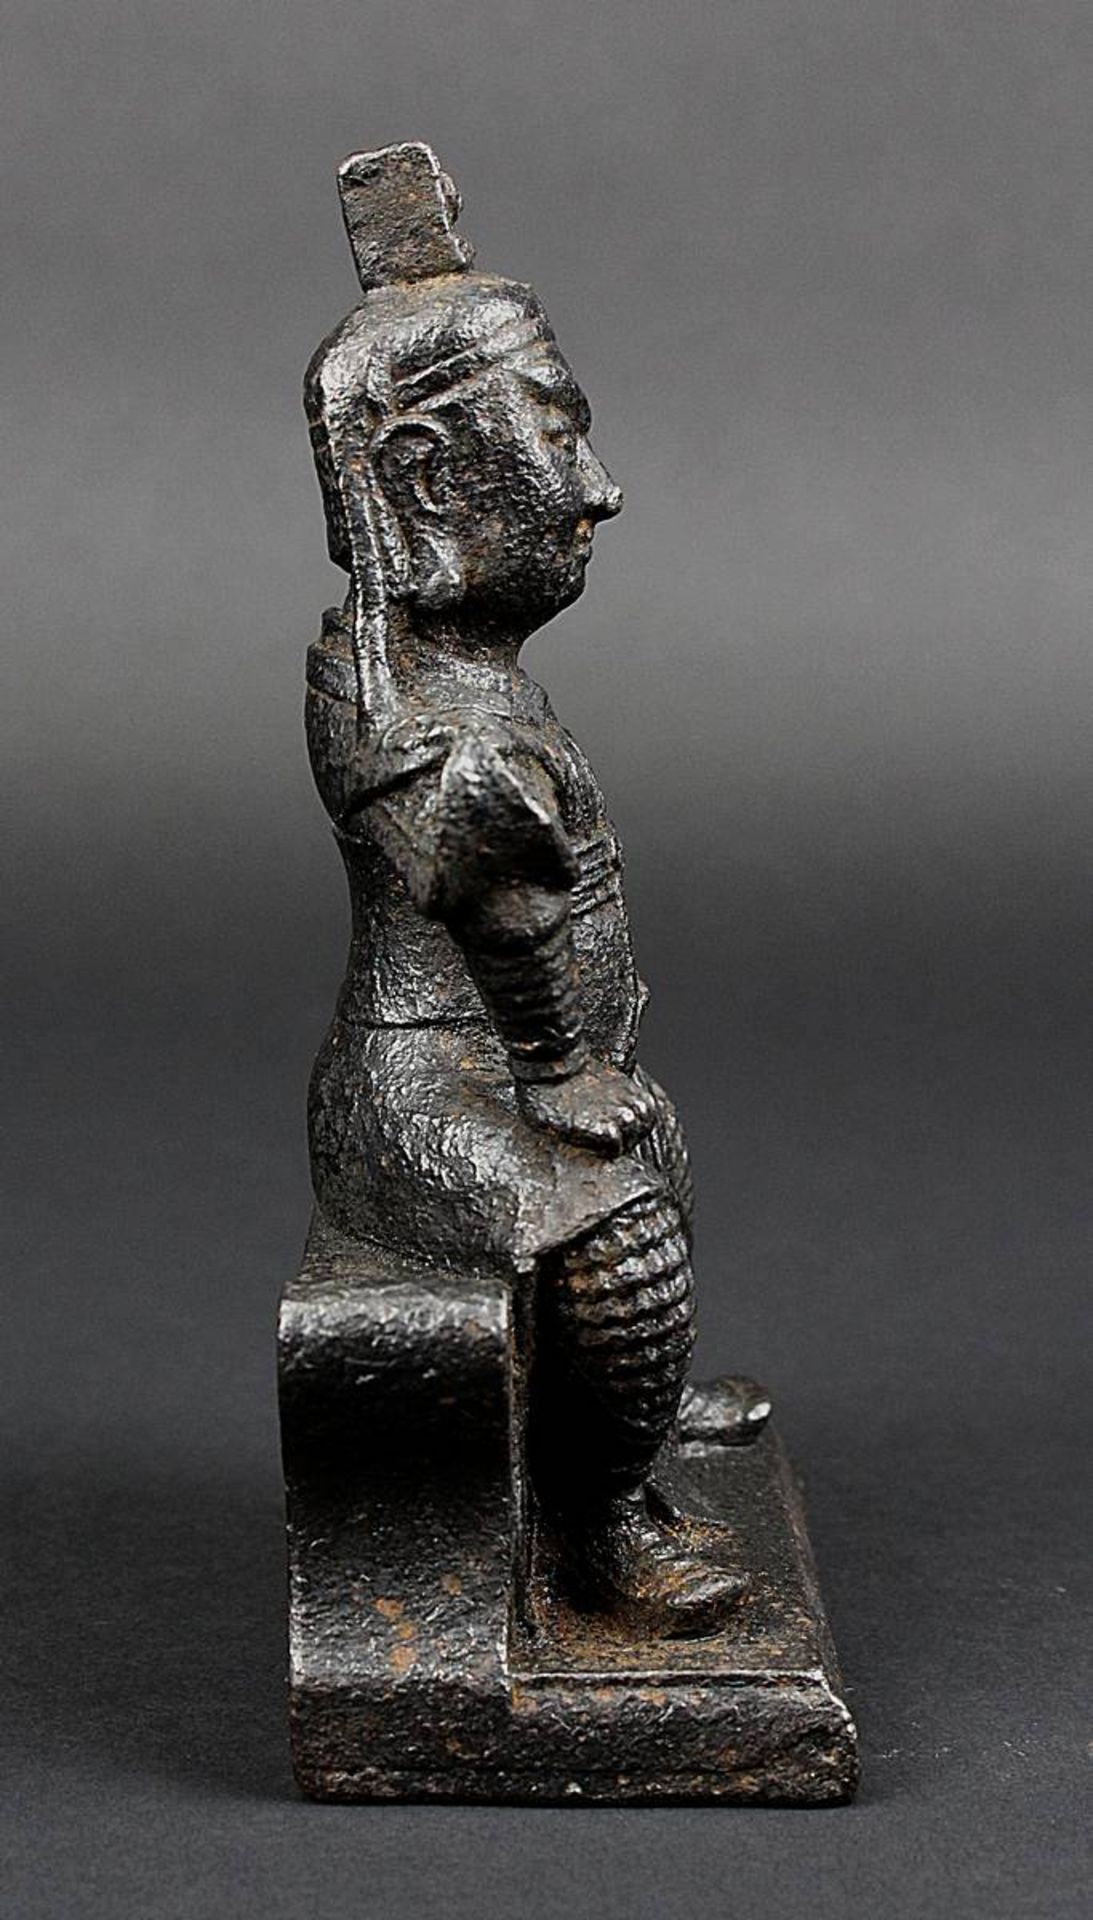 Kriegerfigur aus Eisen, China 18. Jh., vollplastische Figur eines auf einem Hocker sitzenden Krieger - Bild 4 aus 5